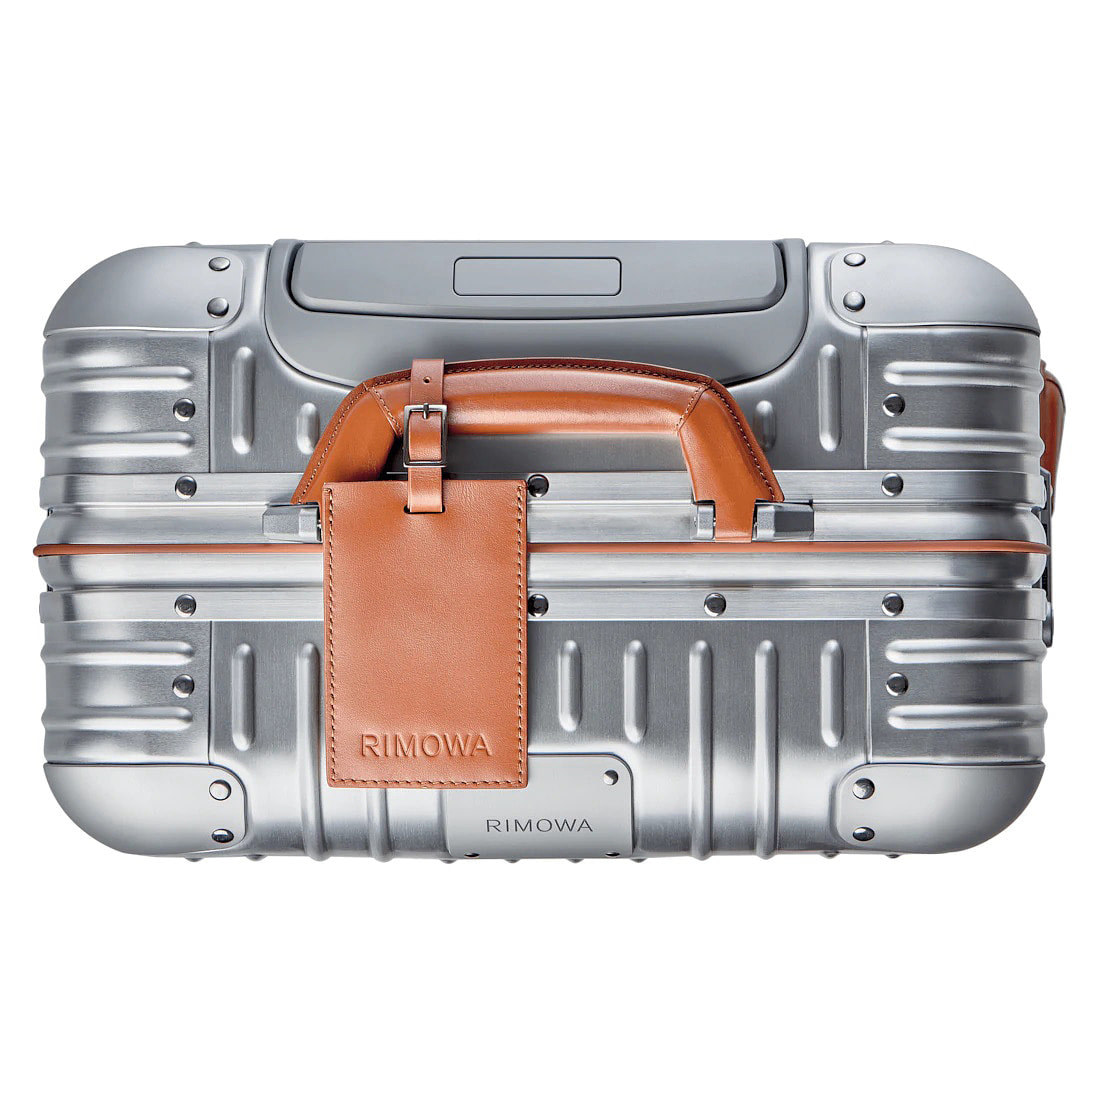 Designer aluminum suitcases